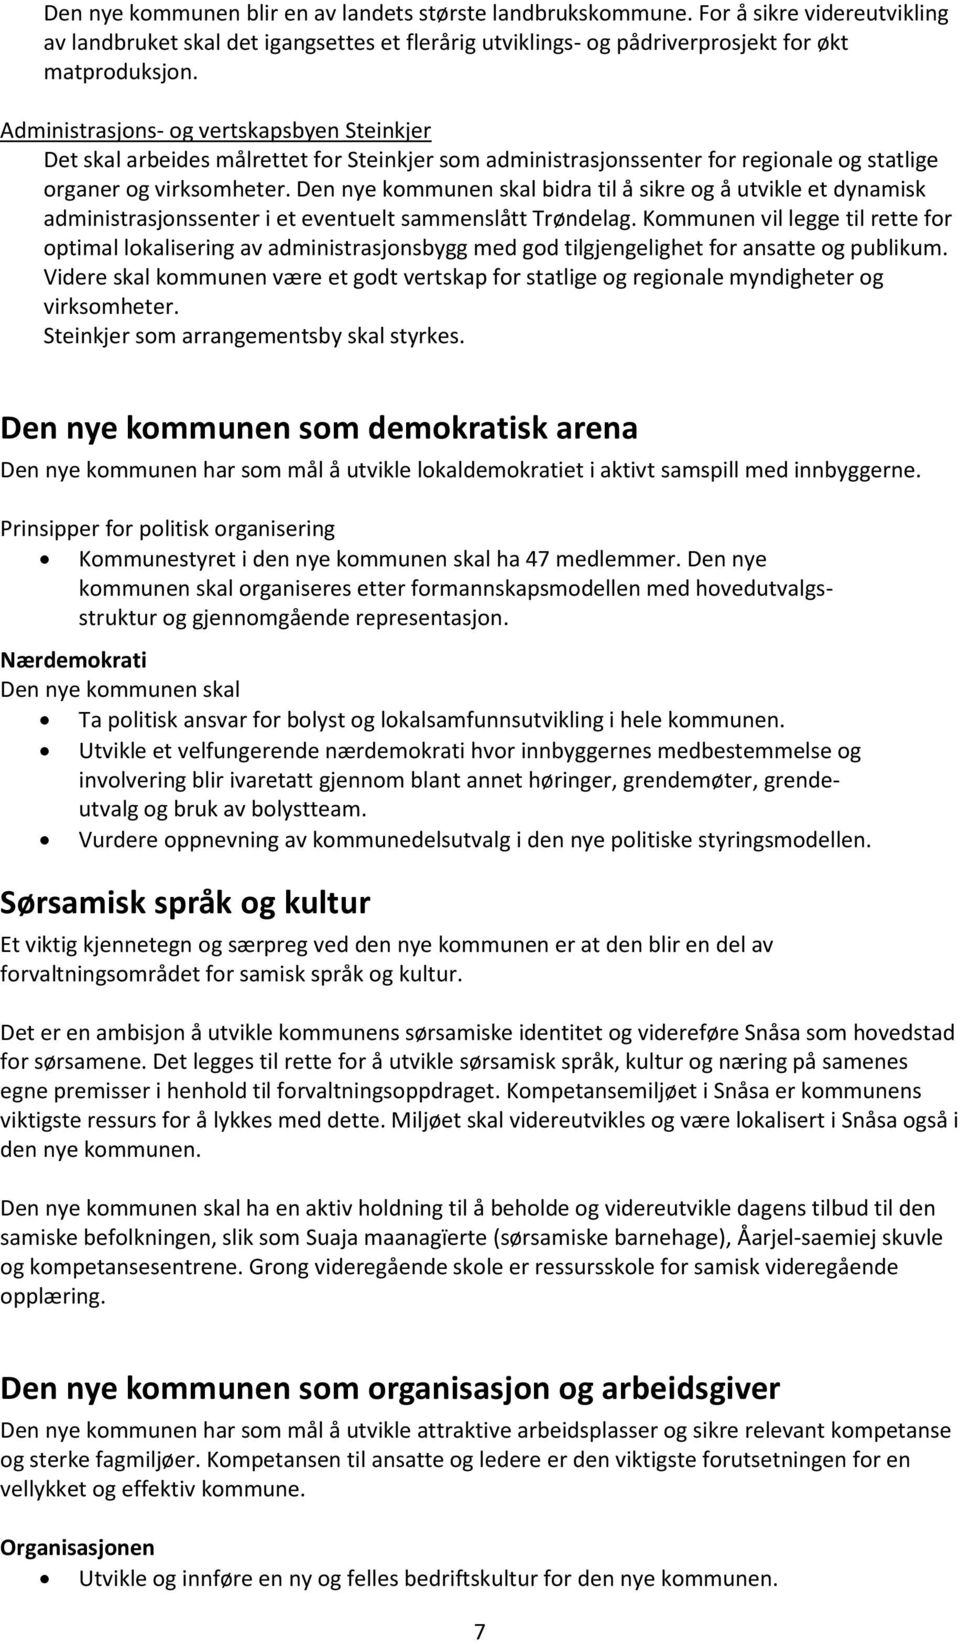 Den nye kommunen skal bidra til å sikre og å utvikle et dynamisk administrasjonssenter i et eventuelt sammenslått Trøndelag.